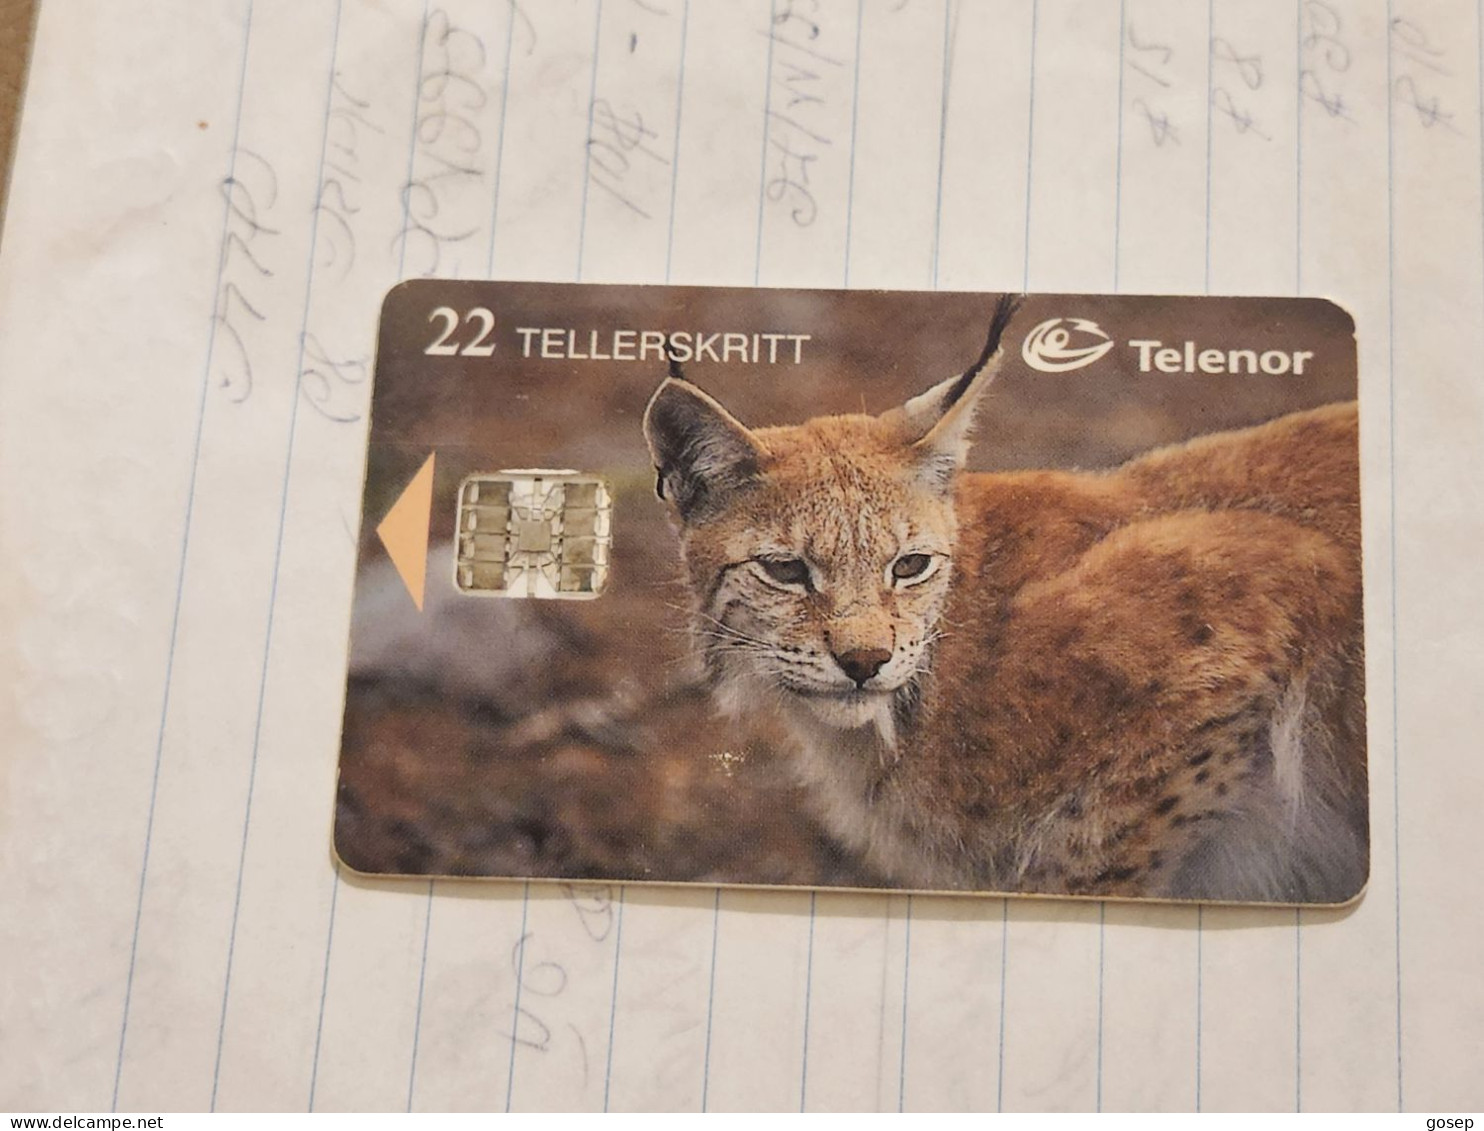 Norway-(N-112)-Gaupe / Lynx-(22 Tellerskritt)-(69)-(C83023151)-used Card+1card Prepiad Free - Norway